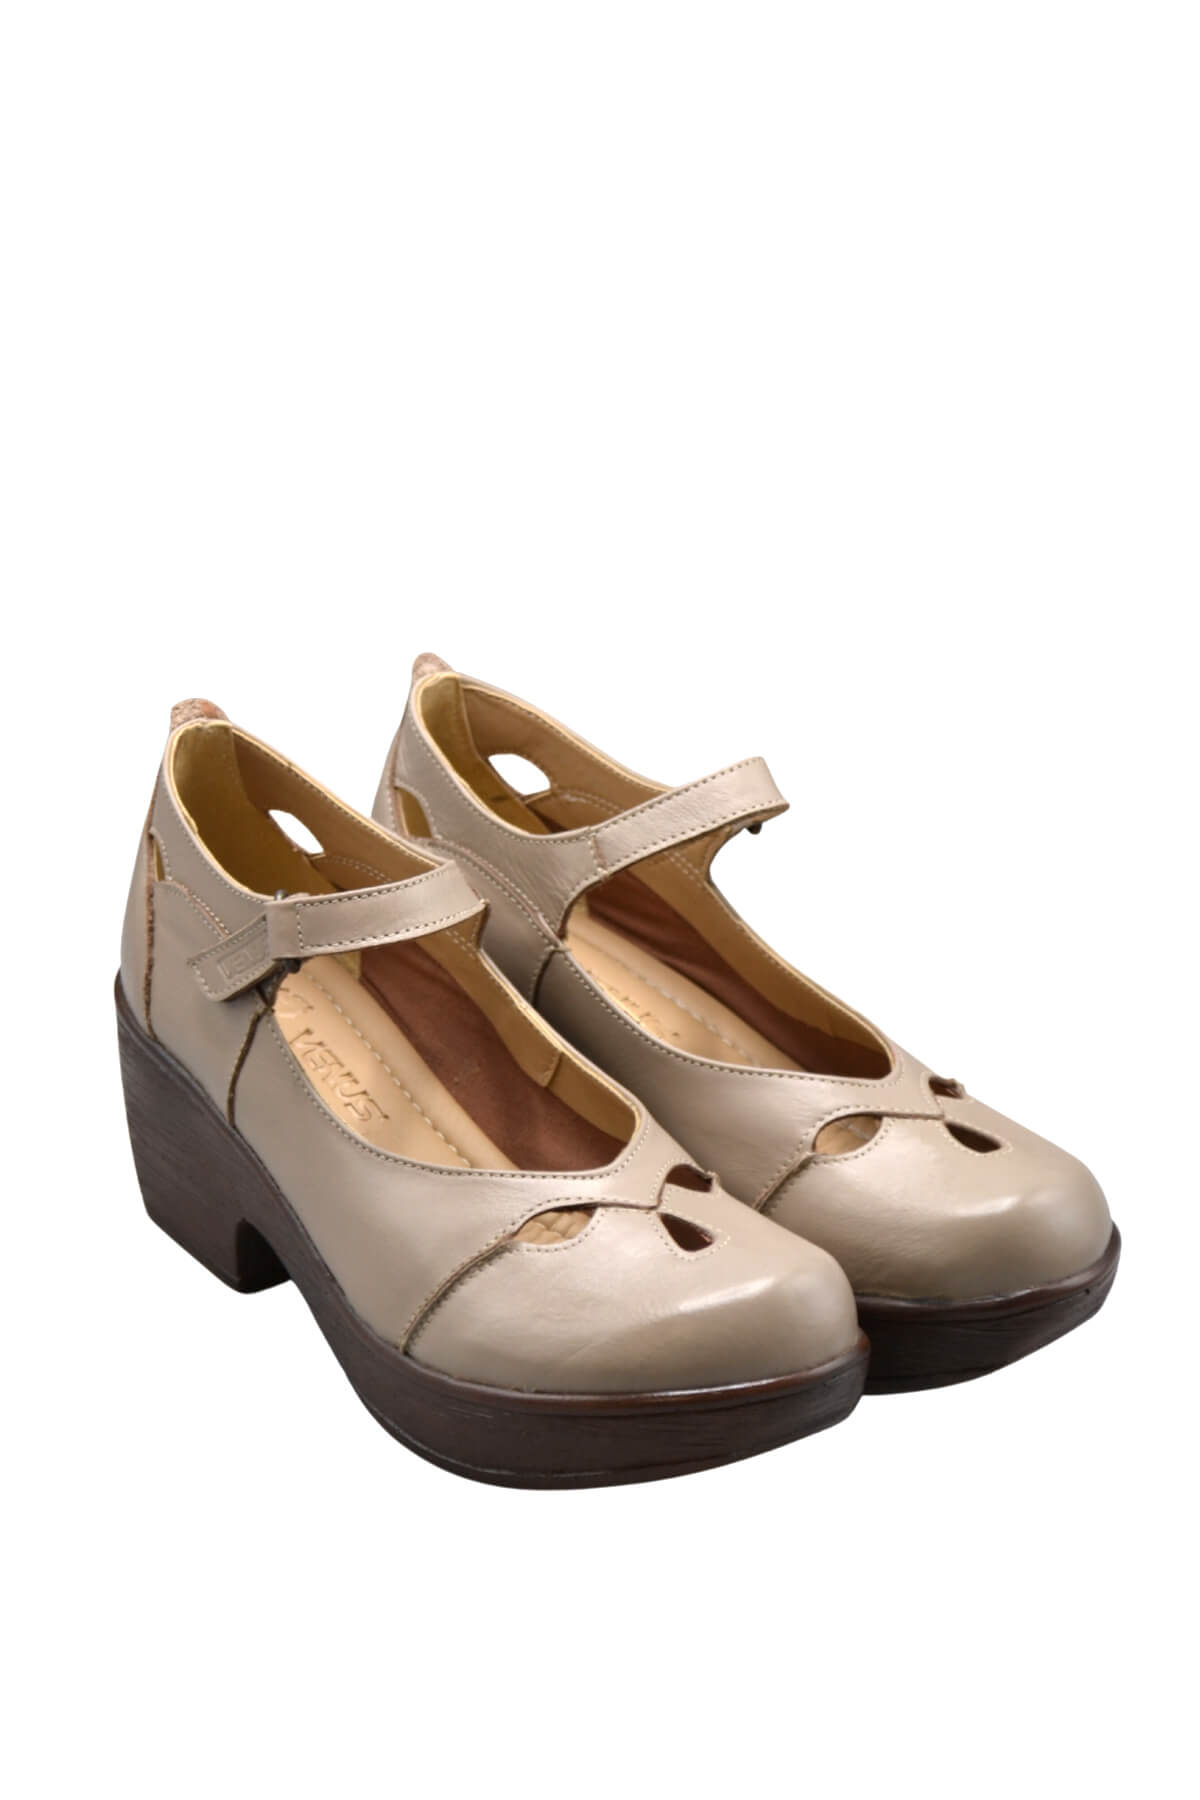 Kadın Apartman Topuk Deri Ayakkabı Taş 1912501 - Thumbnail